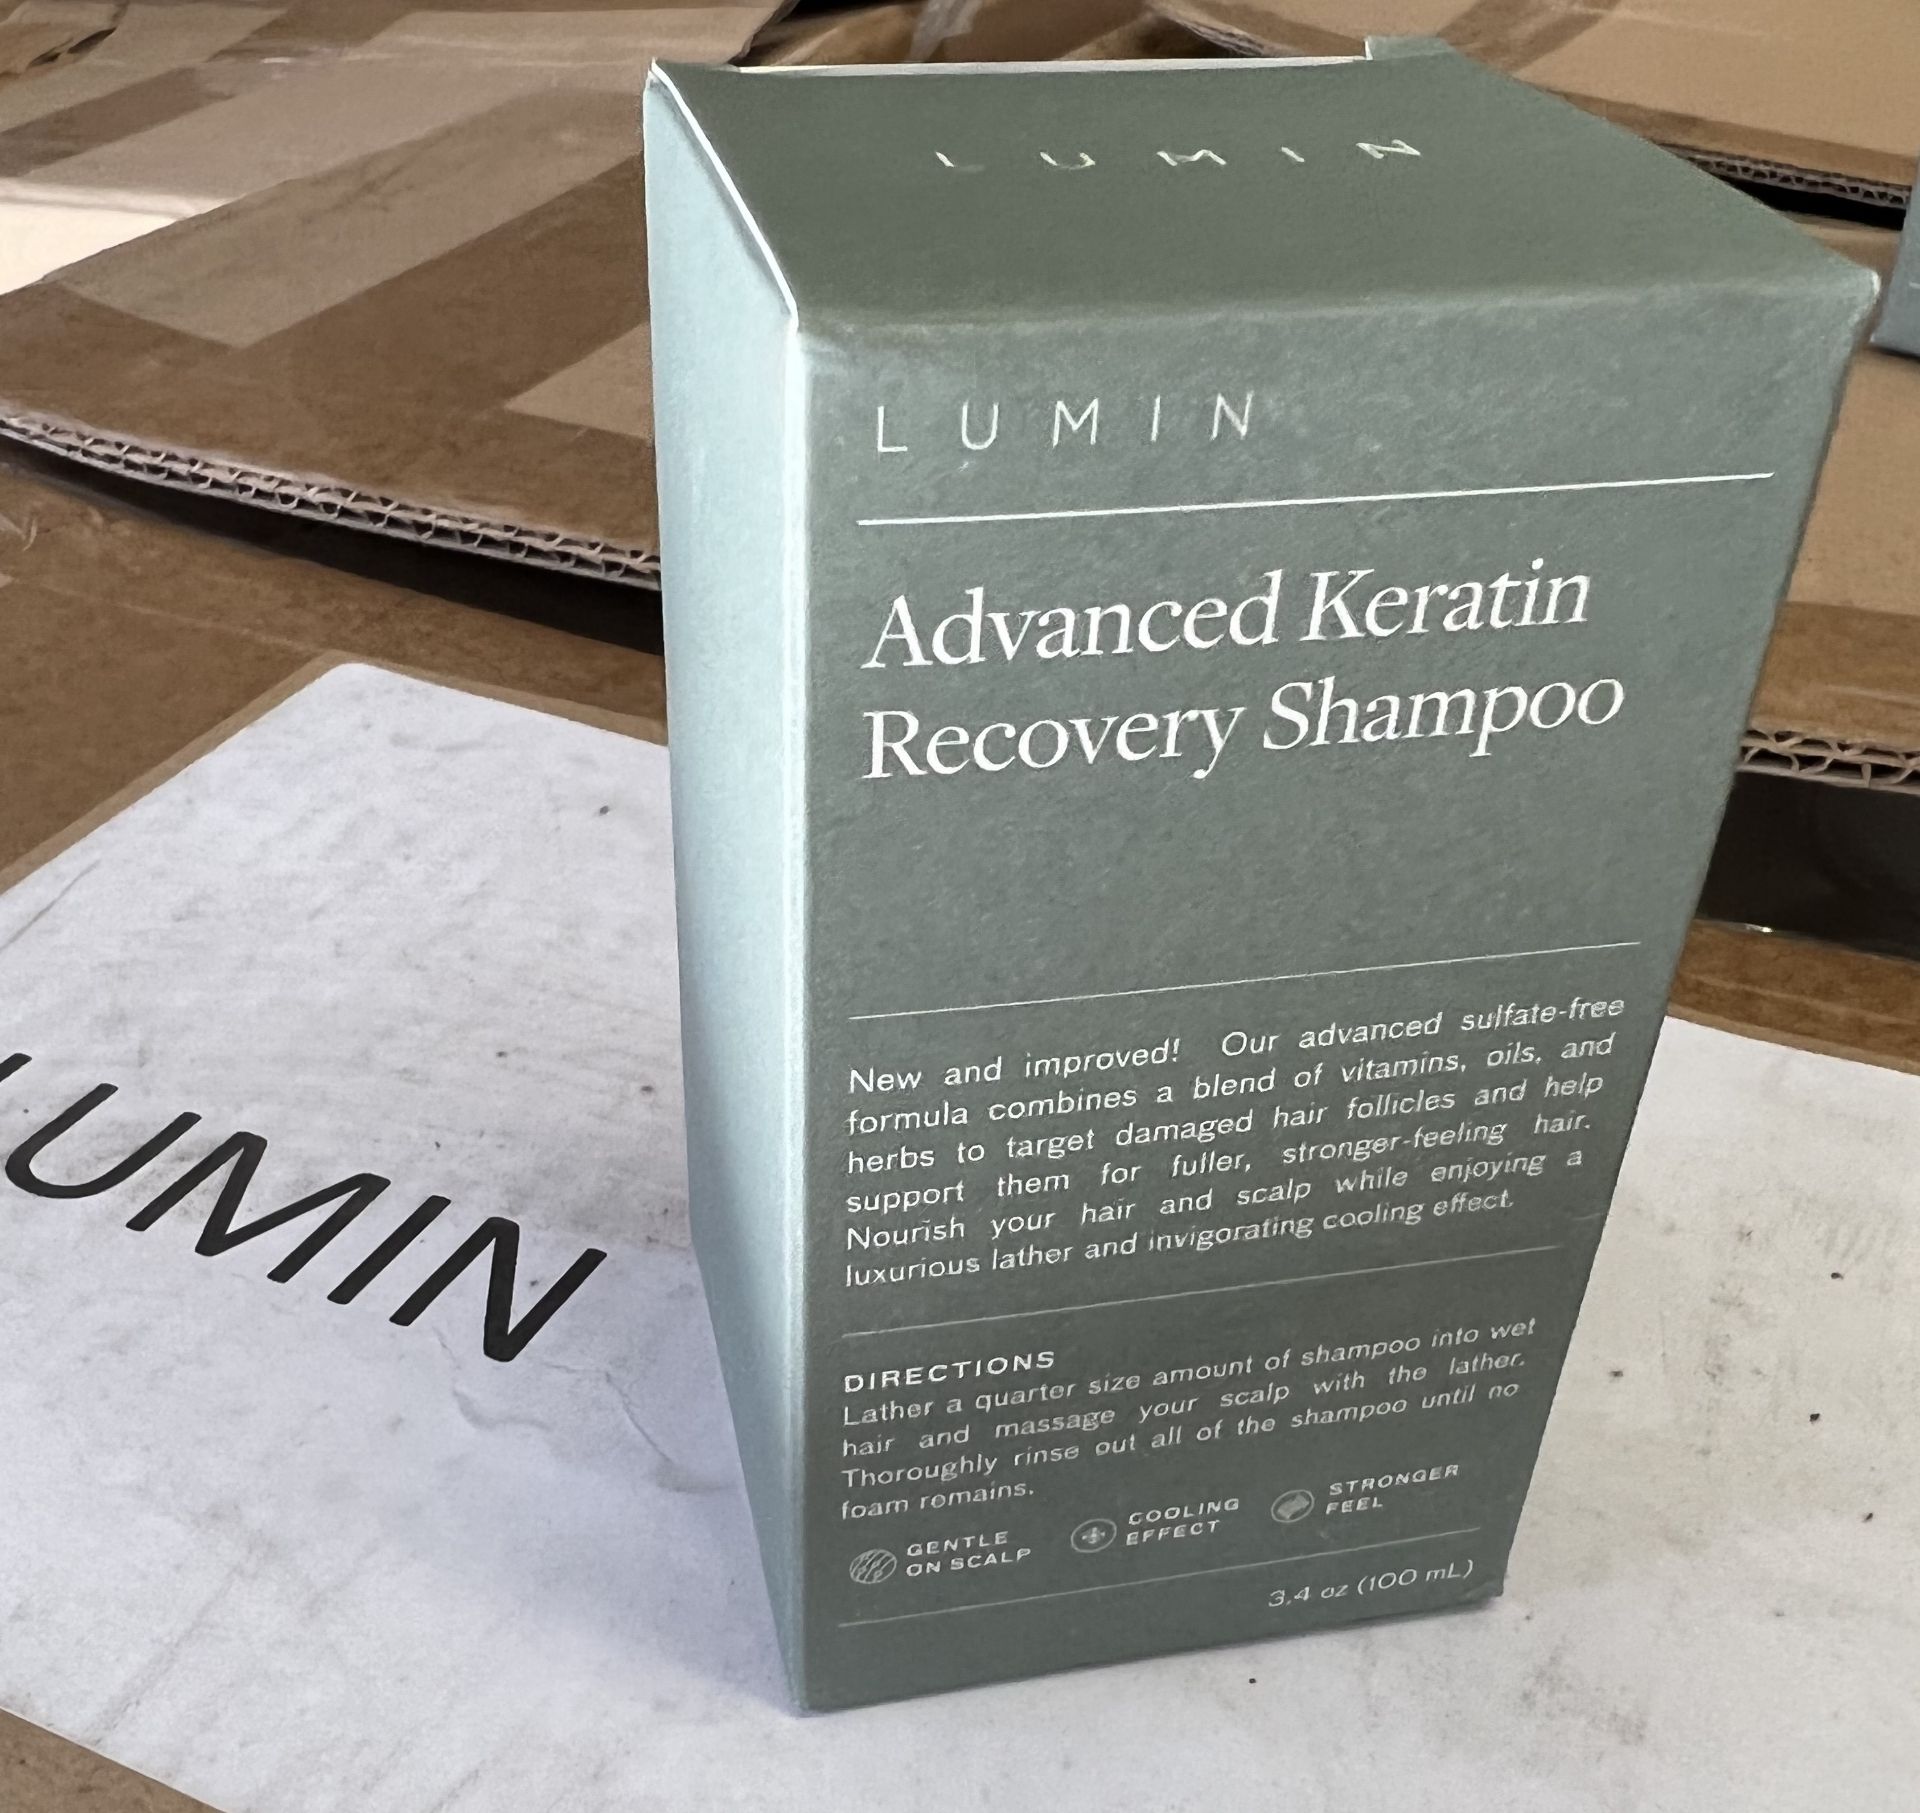 100 x Lumin Advanced Keratin Recovery Shampoo 100ml (NEW) - RRP £700+ ! - Image 3 of 4